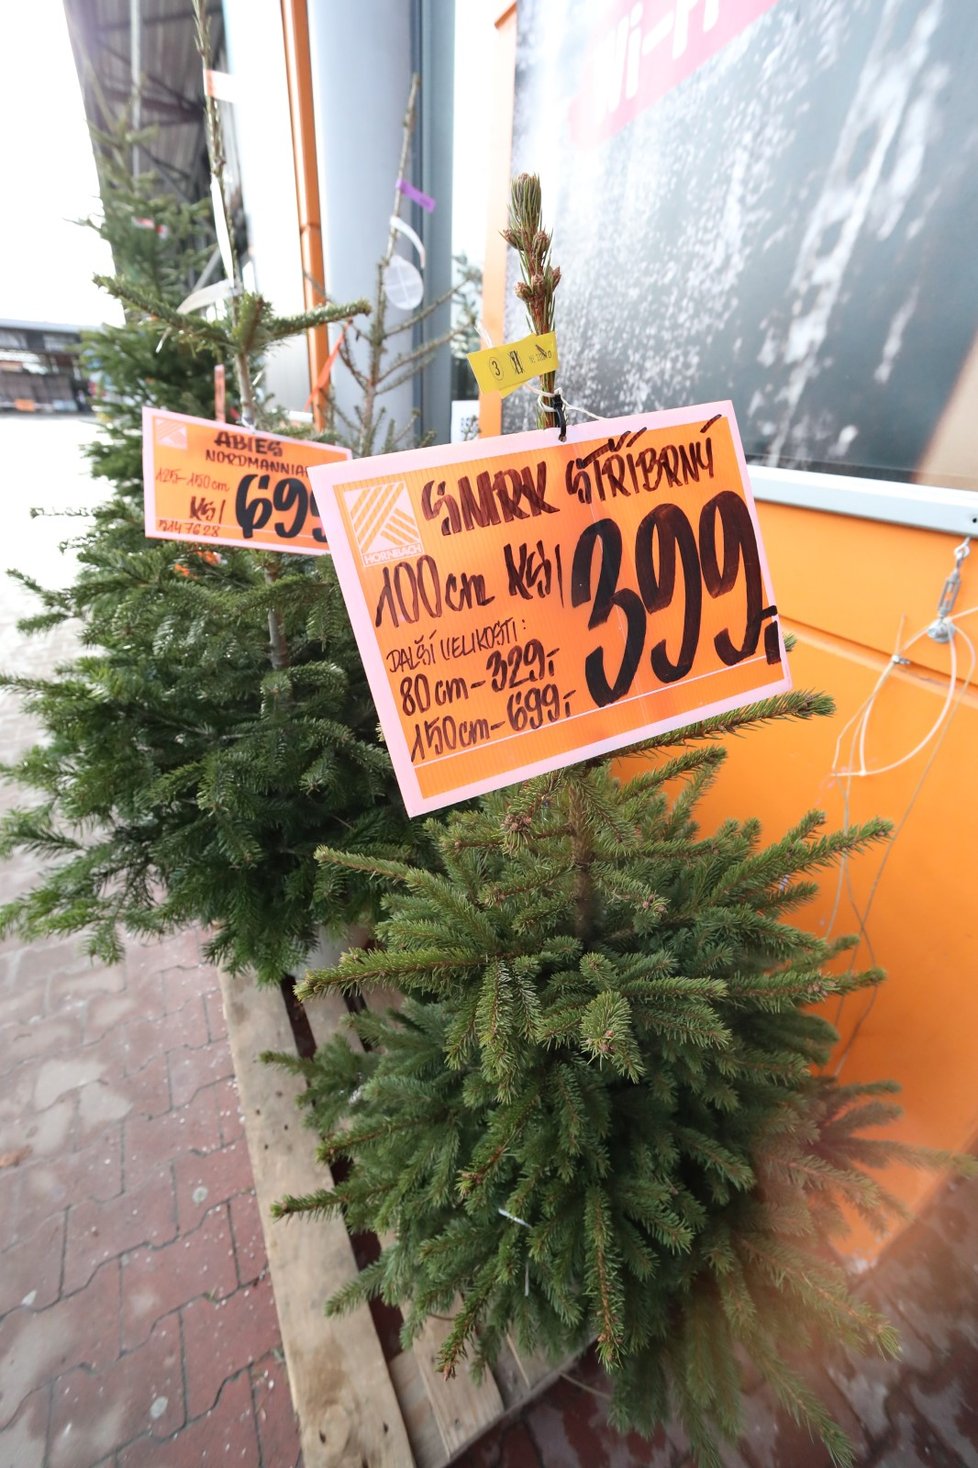 Prodej vánočních stromků: kde a za kolik ho seženete?